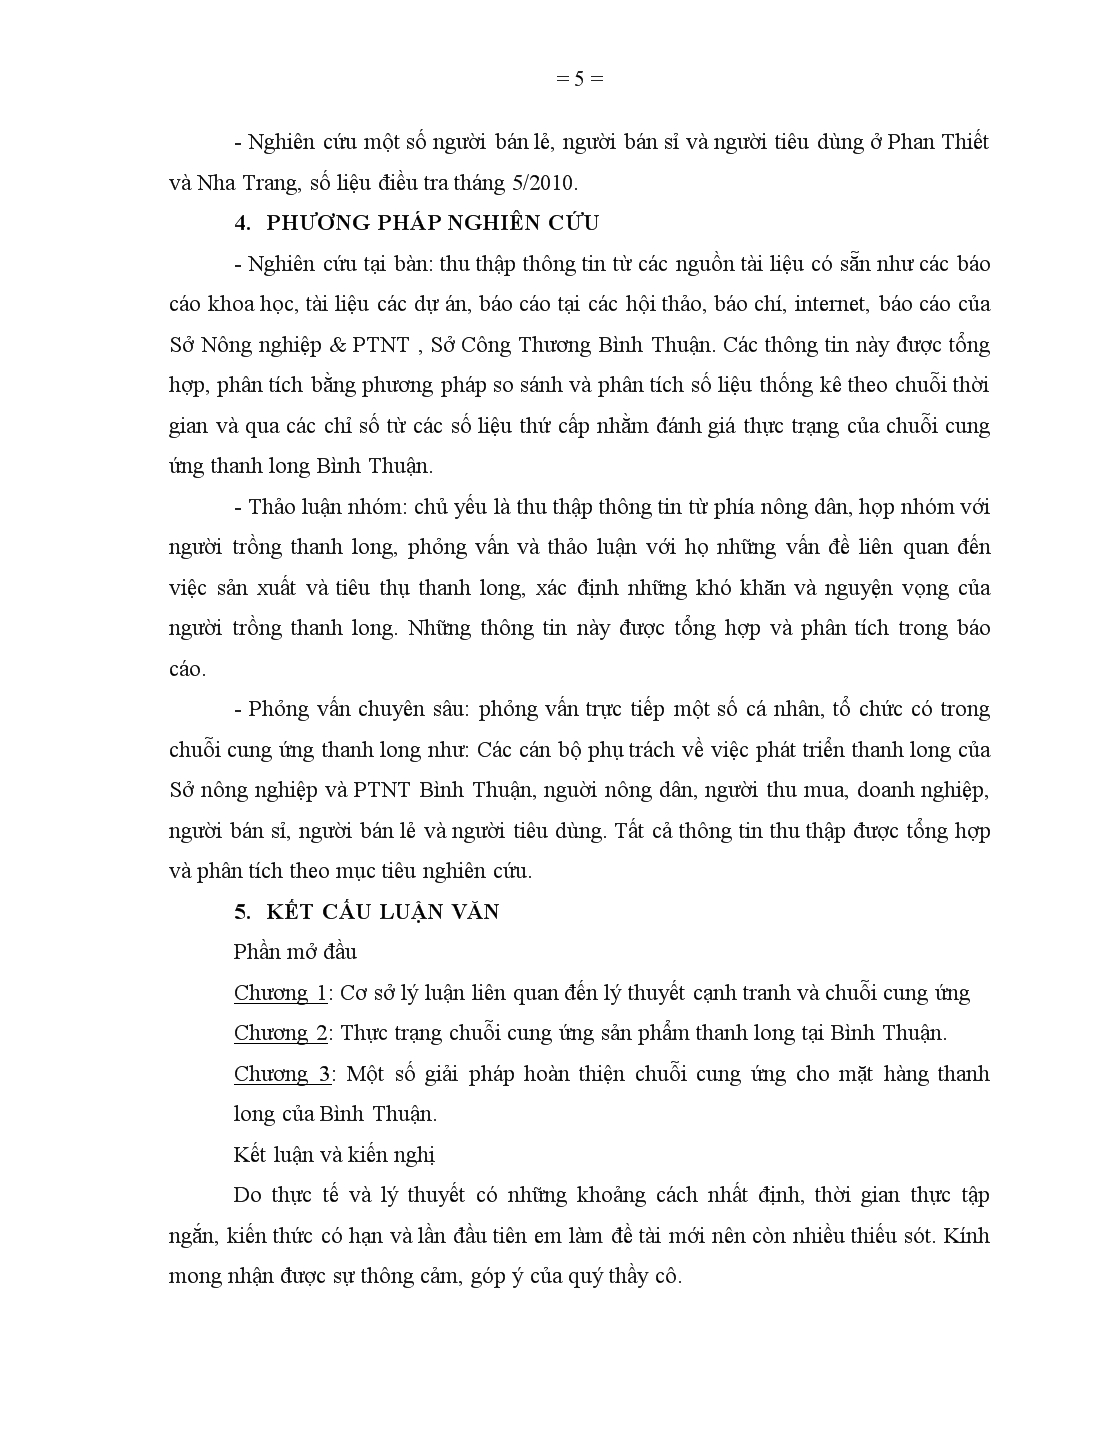 Luận văn Hoàn thiện chuỗi cung ứng mặt hàng thanh long Bình Thuận trang 5